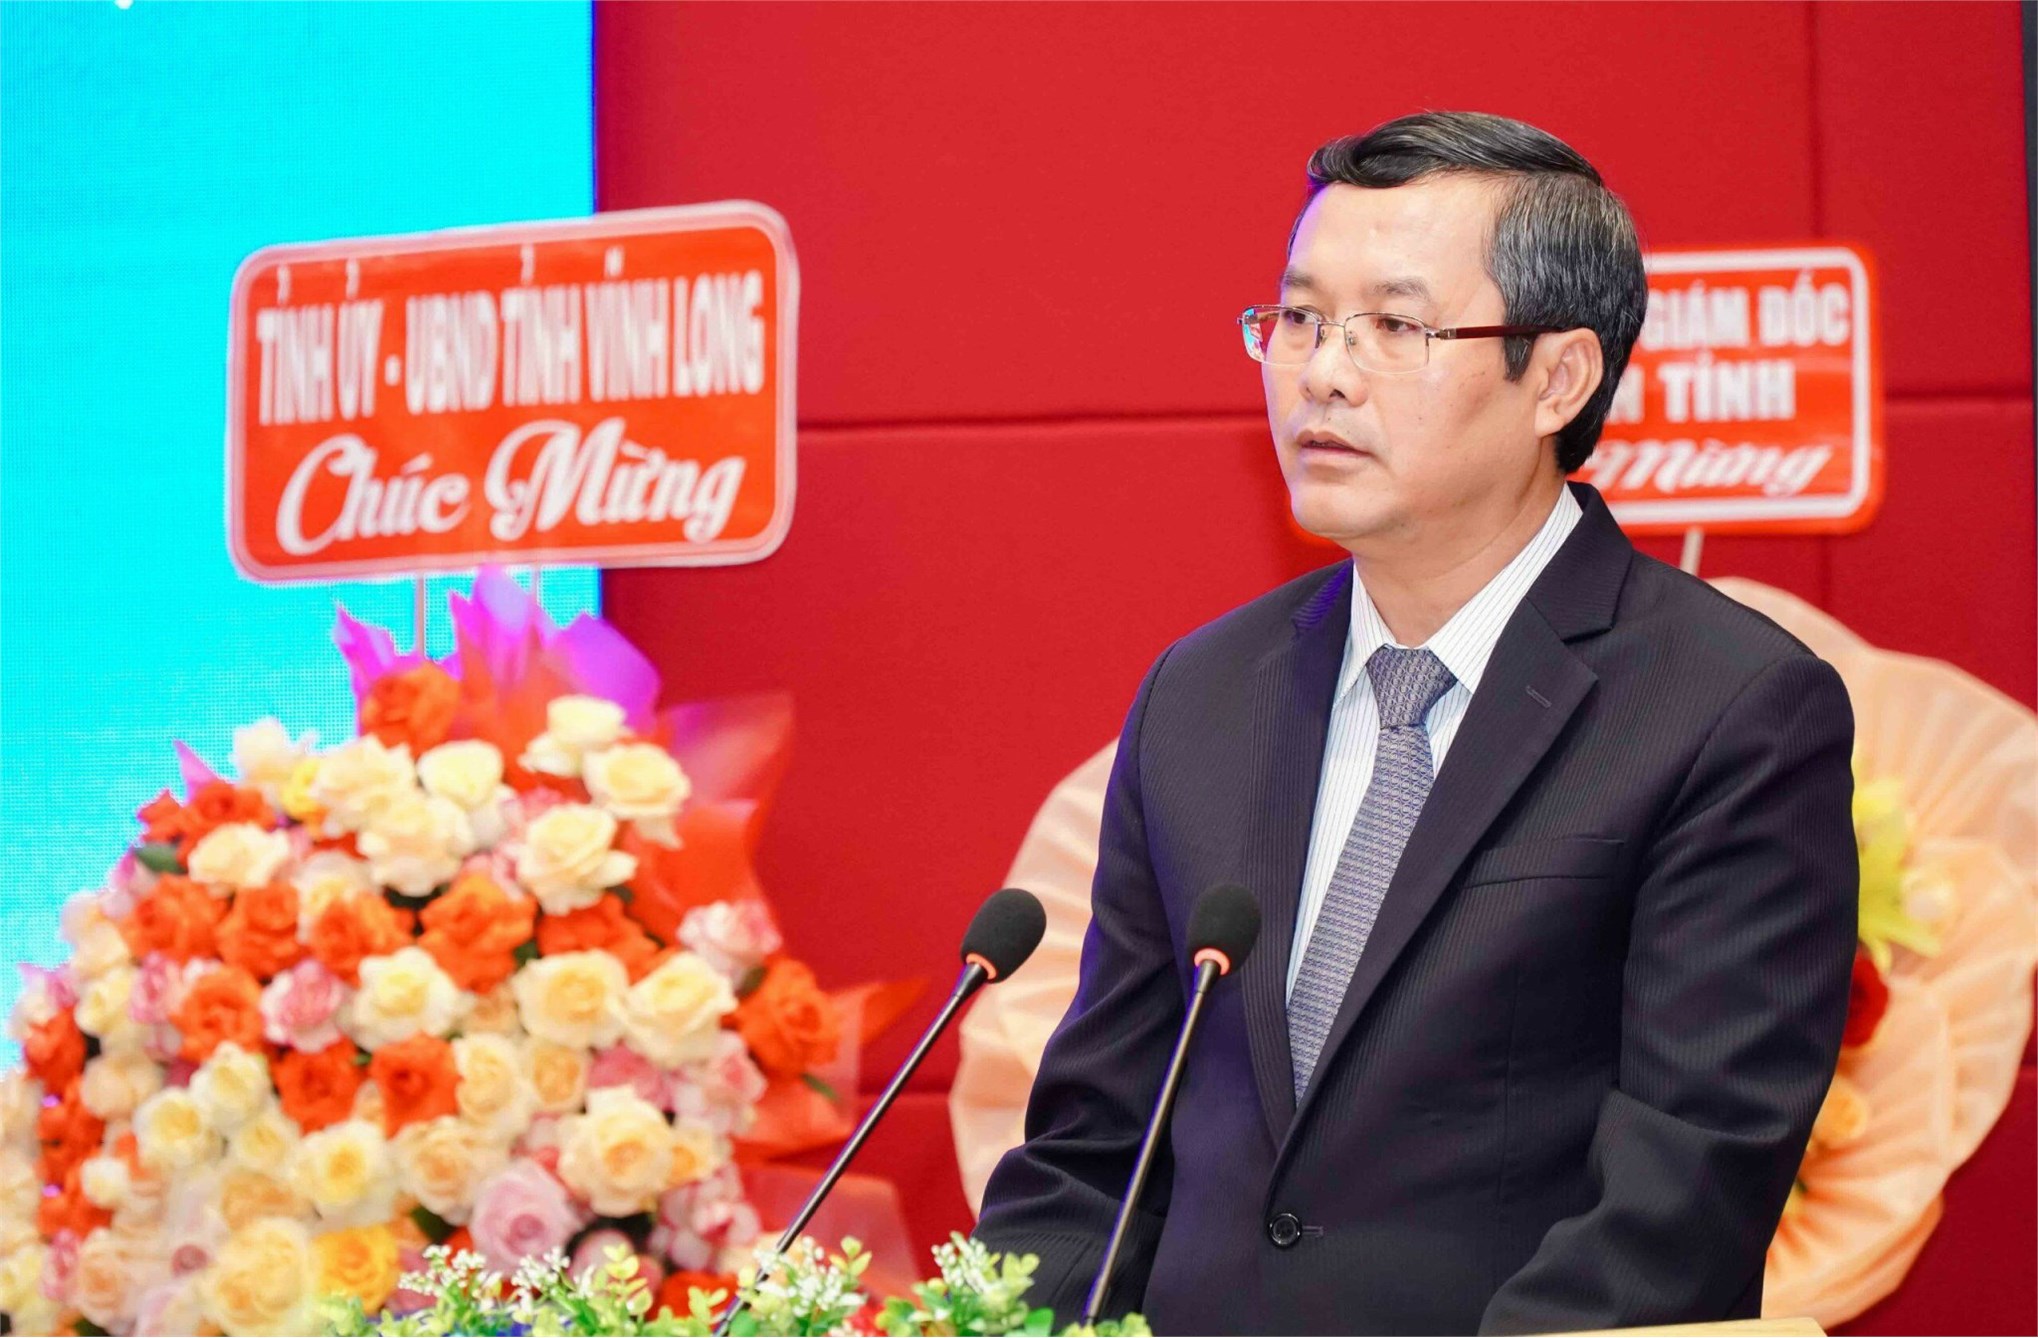 Phó Giáo sư, Tiến sĩ Nguyễn Văn Phúc – Thứ trưởng Bộ Giáo dục và Đào tạo Việt Nam phát biểu tại Hội nghị